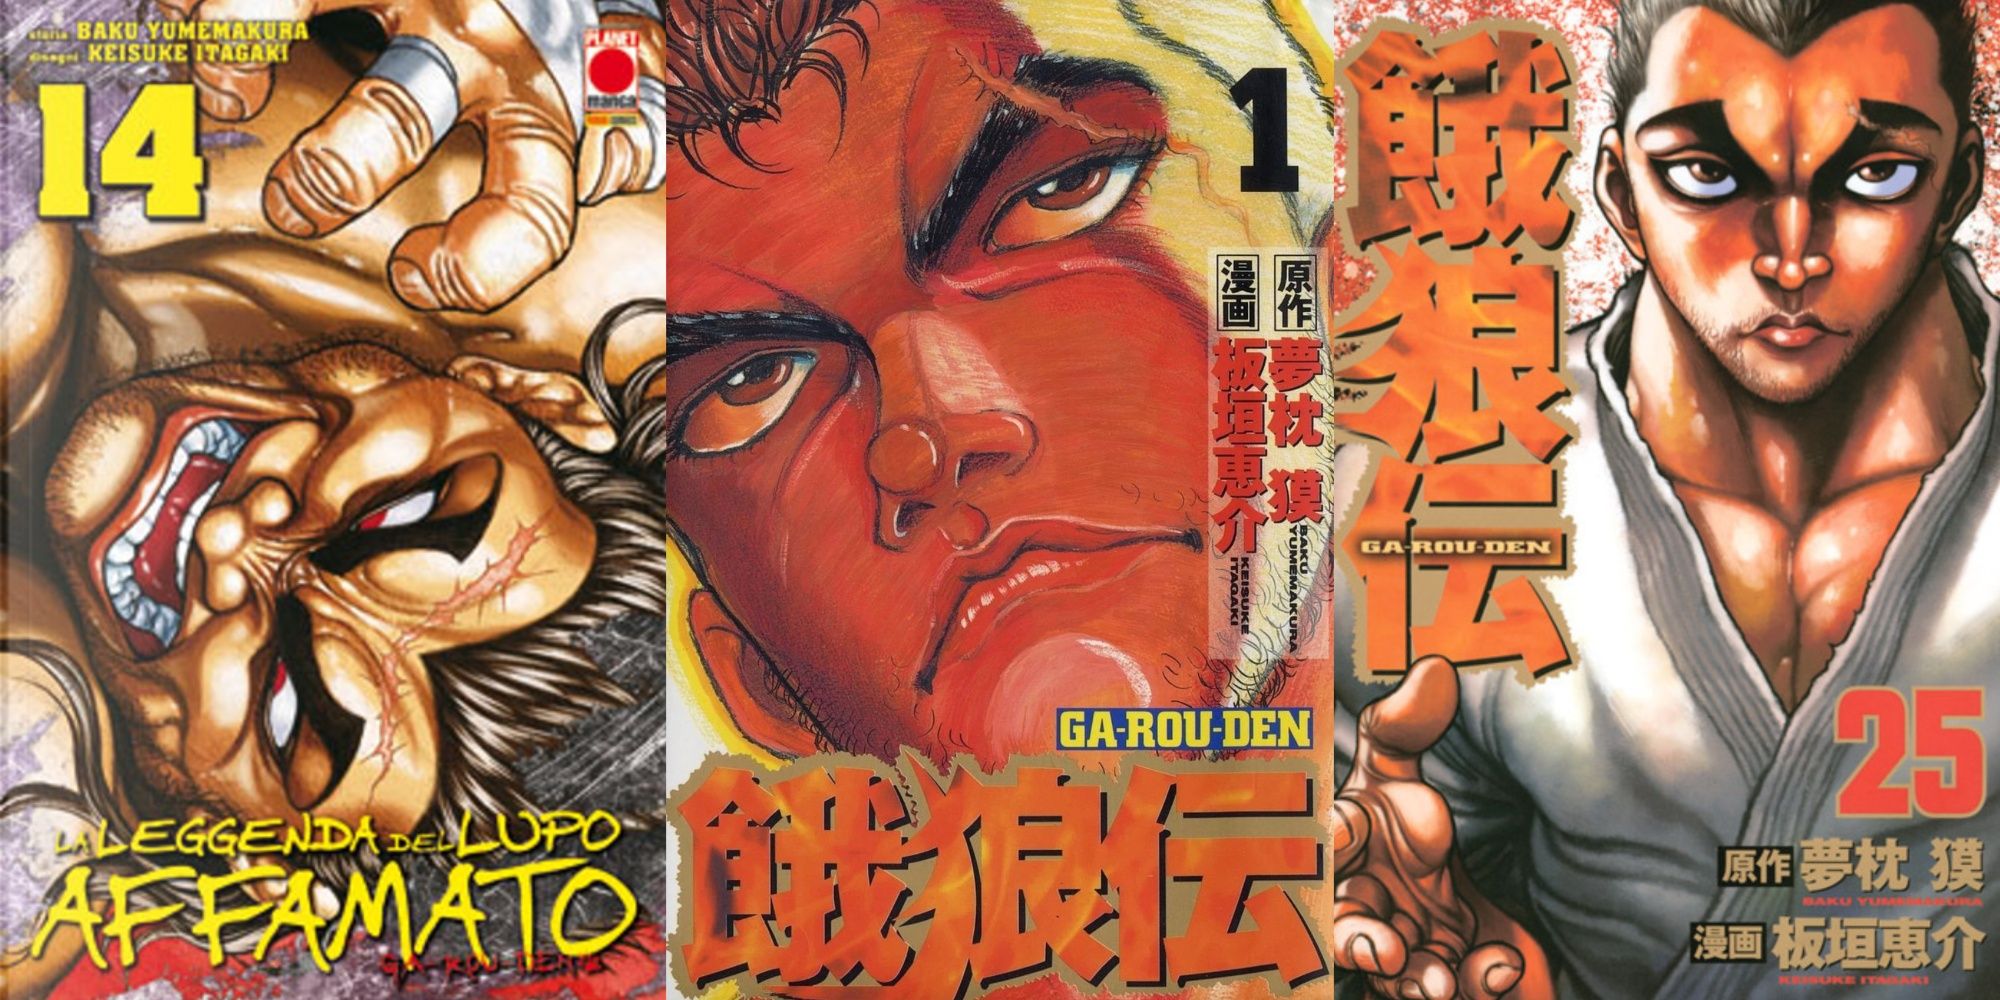 garouden manga volumes